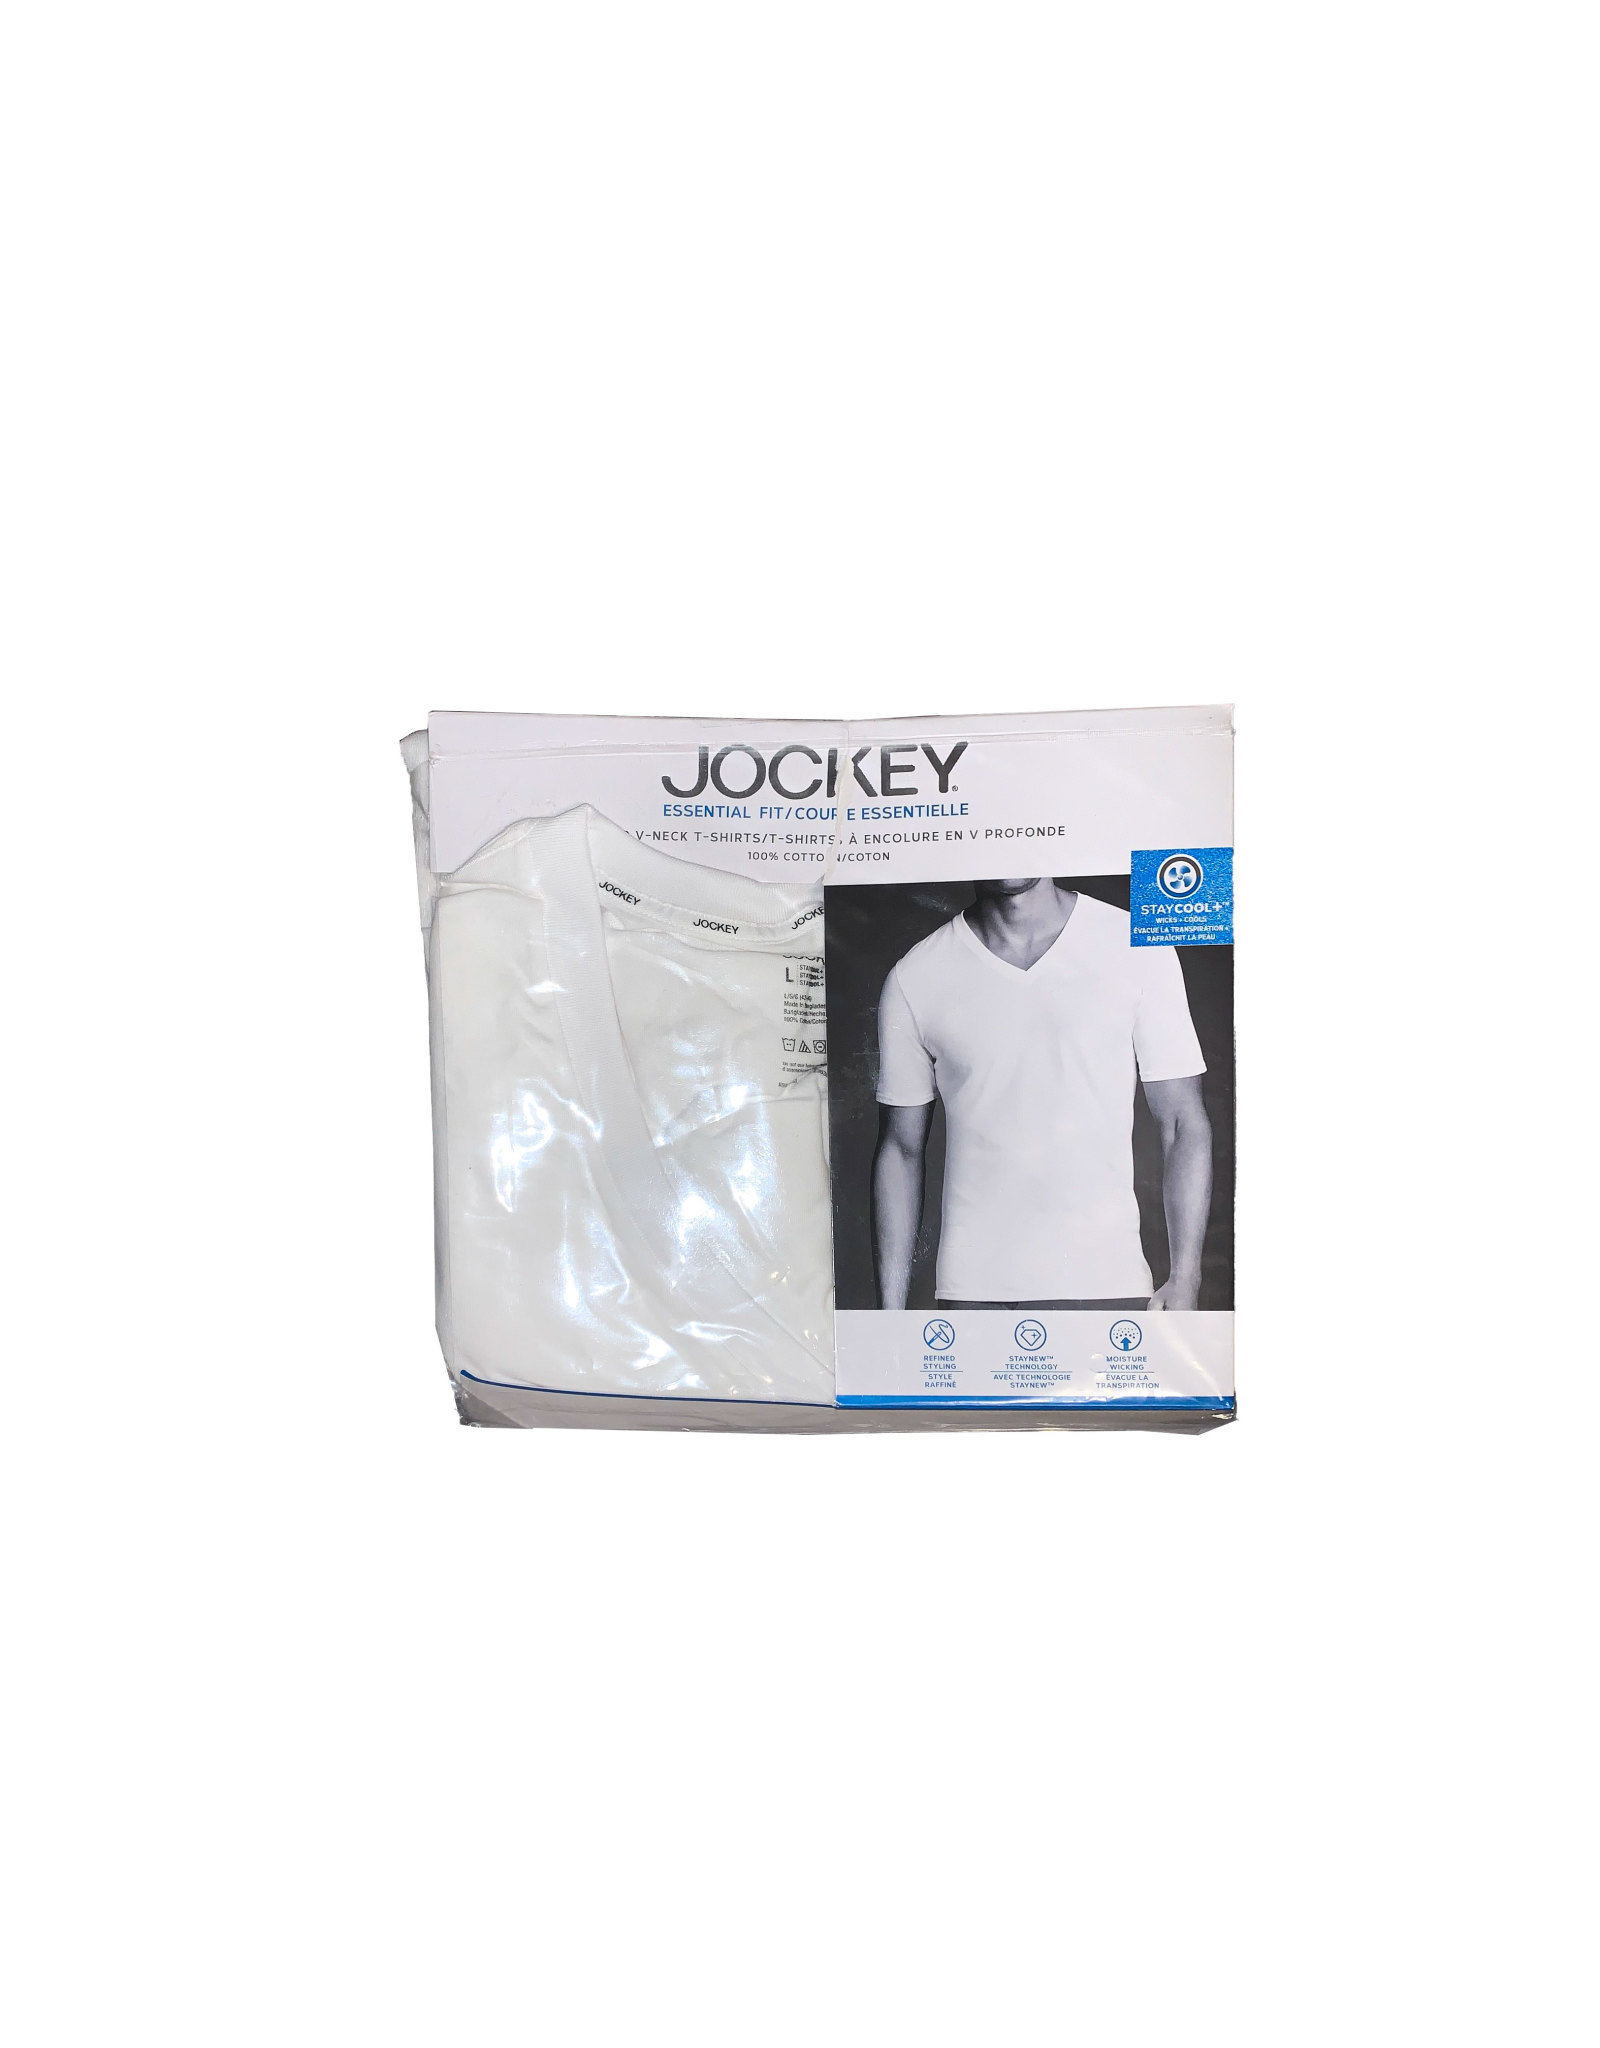 JOCKEY  2 Deep  V-neck  T-shirts  Size L